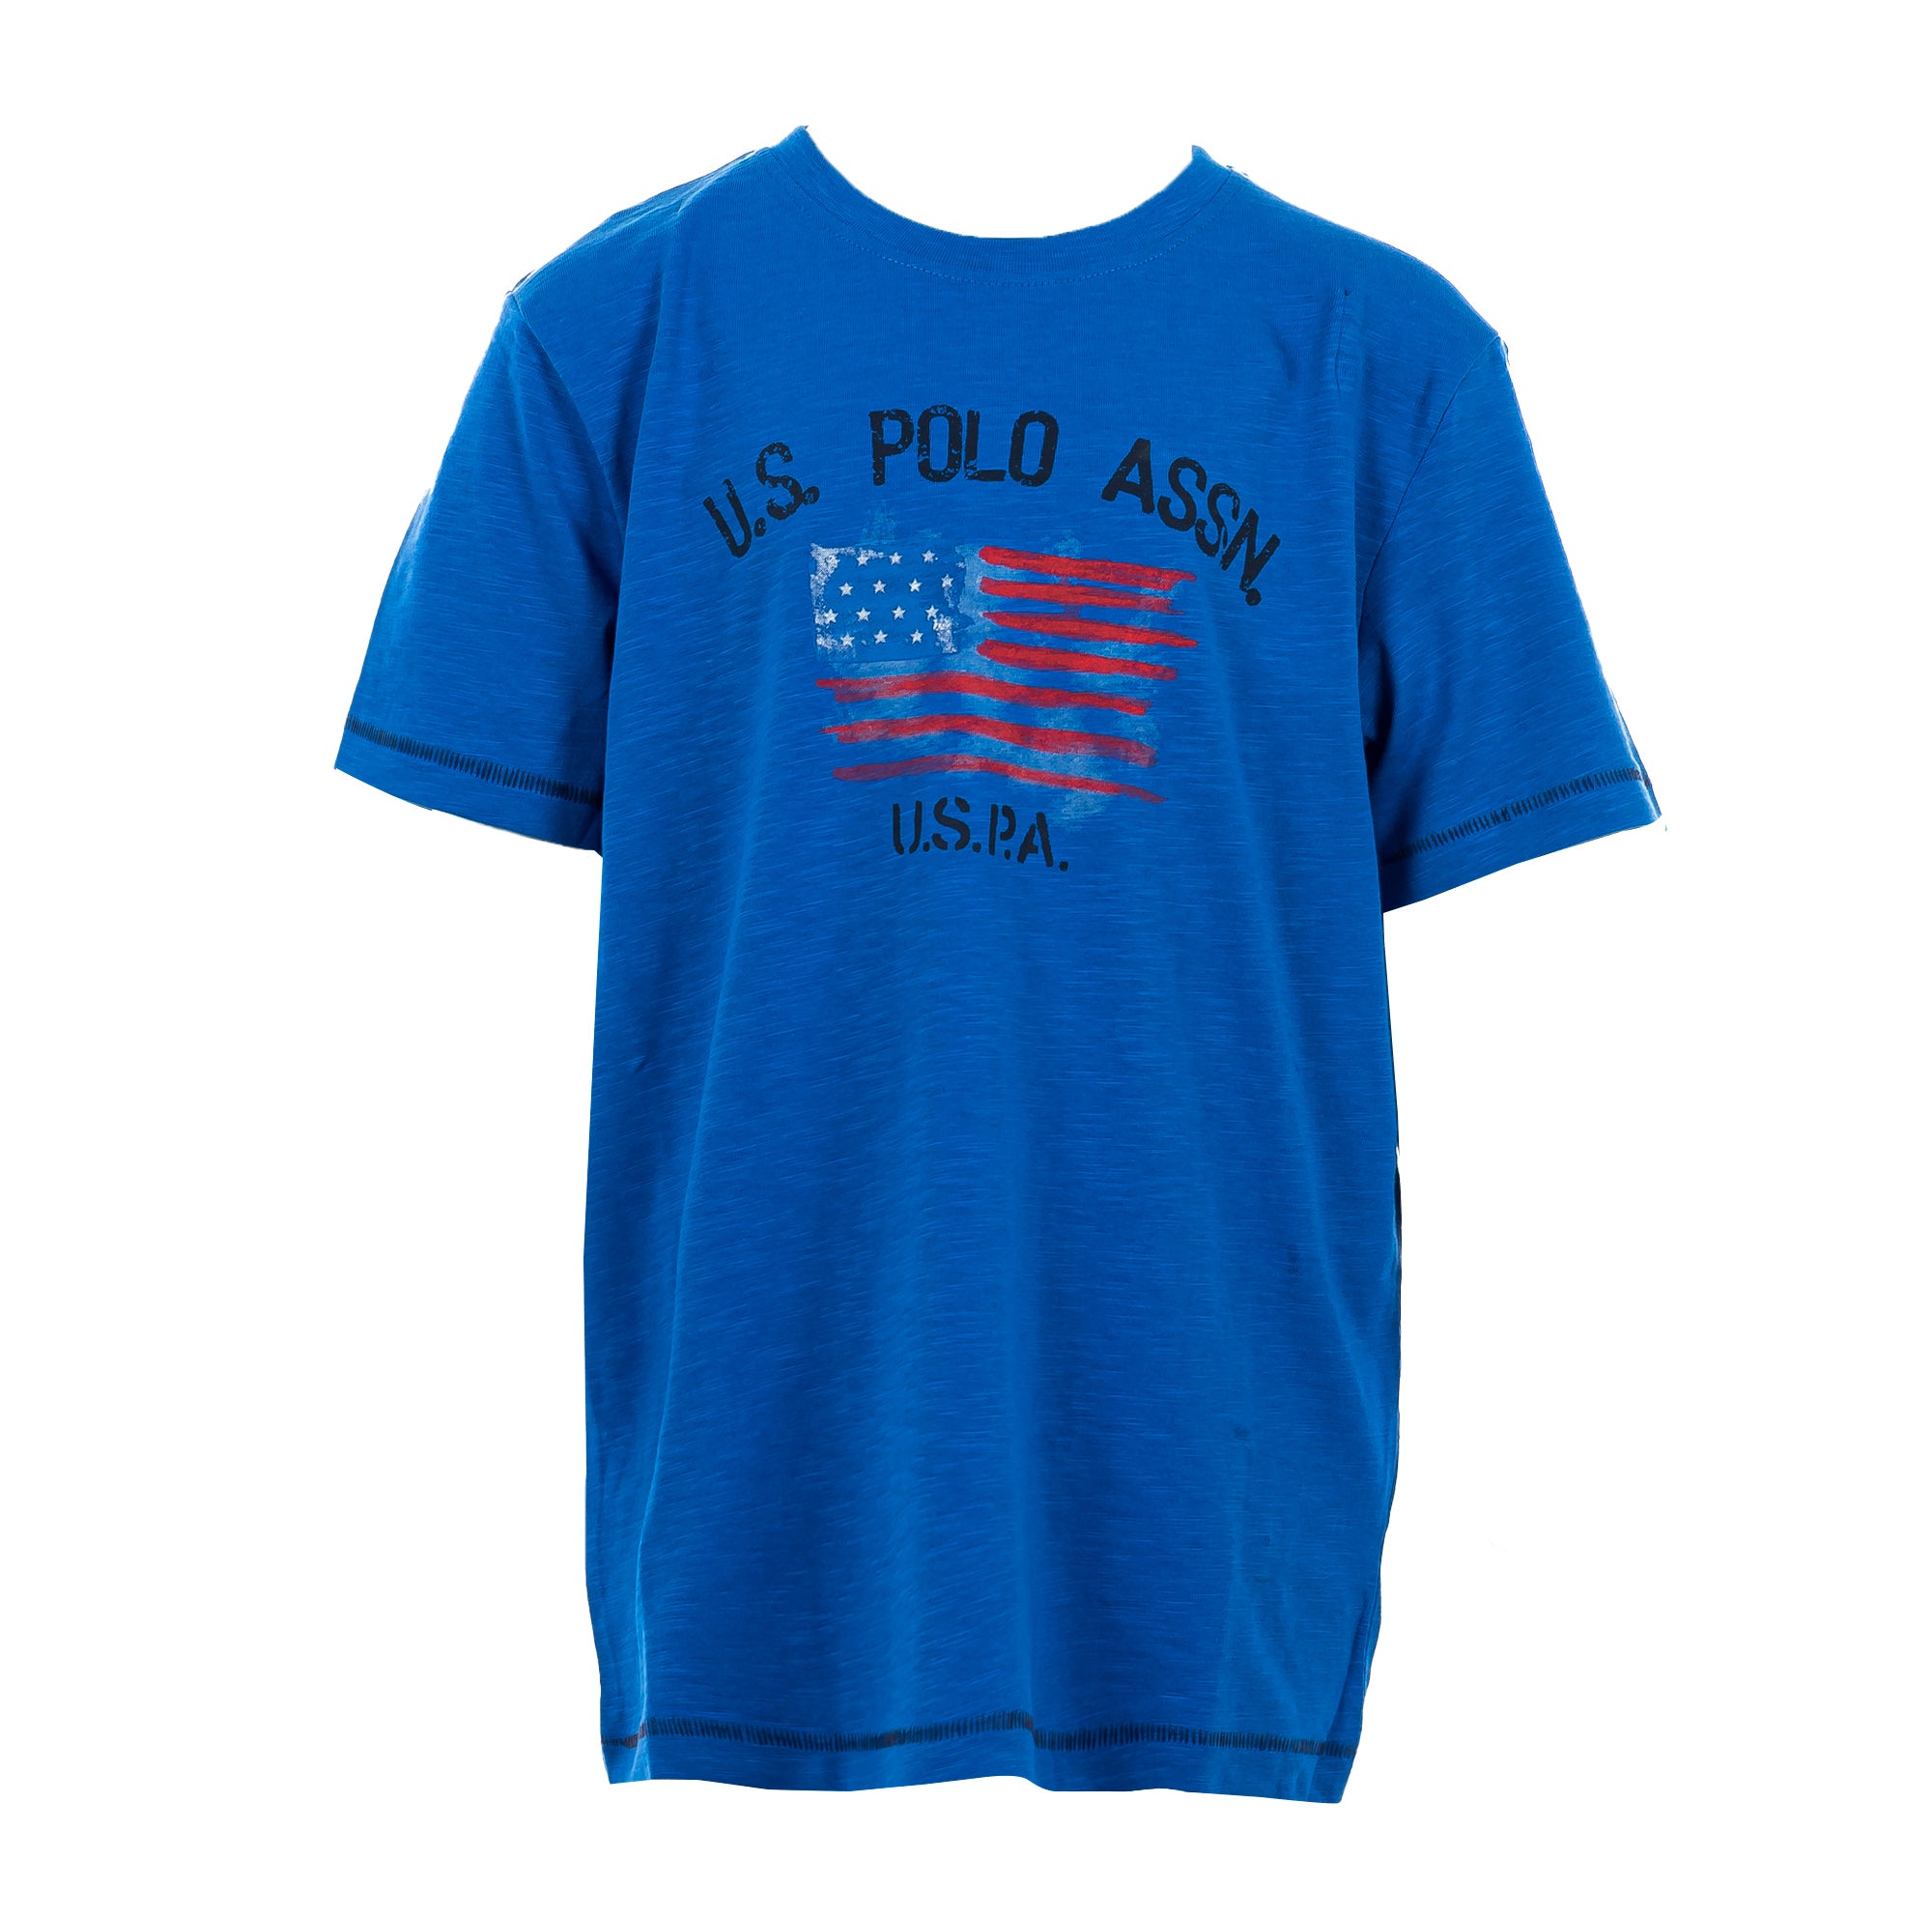 U.S. POLO ASSN. | T-Shirt Bambino | 43975